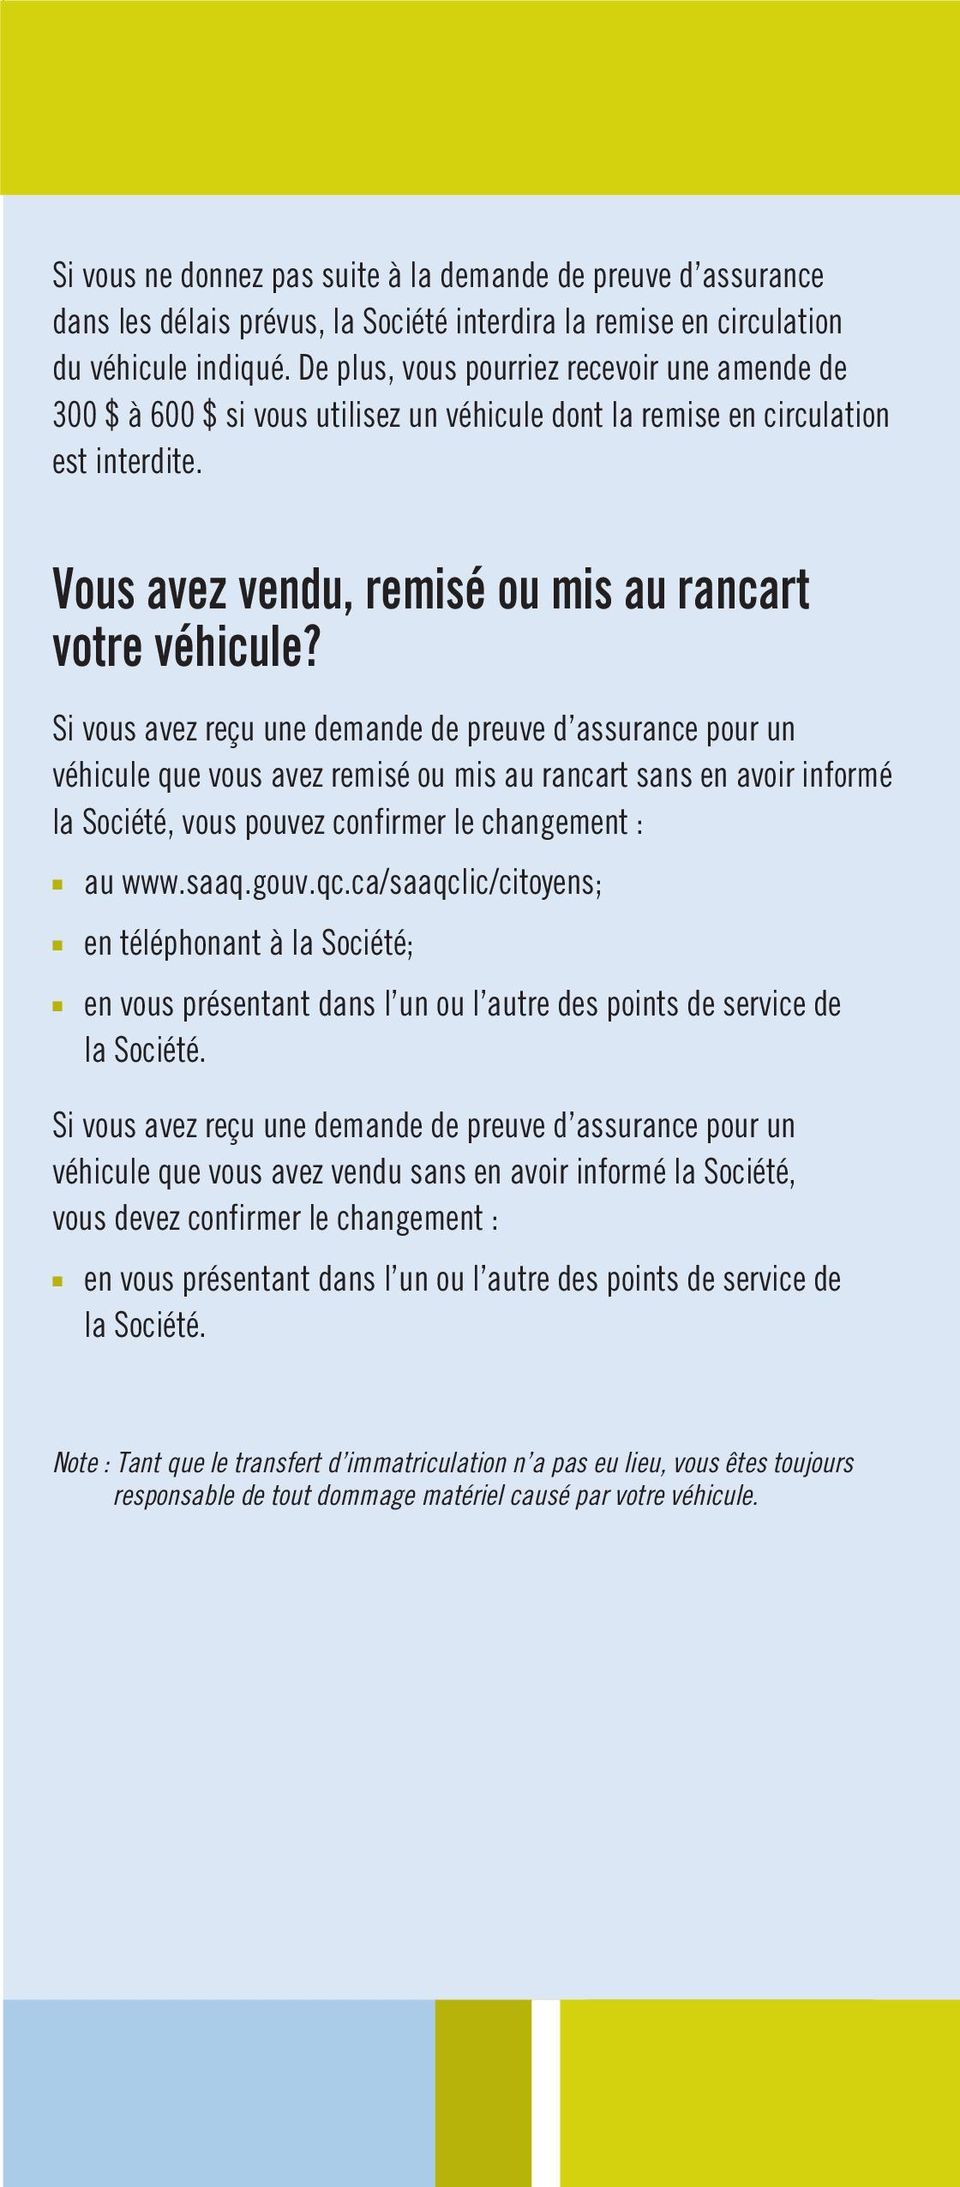 Si vous avez reçu une demande de preuve d assurance pour un véhicule que vous avez remisé ou mis au rancart sans en avoir informé la Société, vous pouvez confirmer le changement : au www.saaq.gouv.qc.